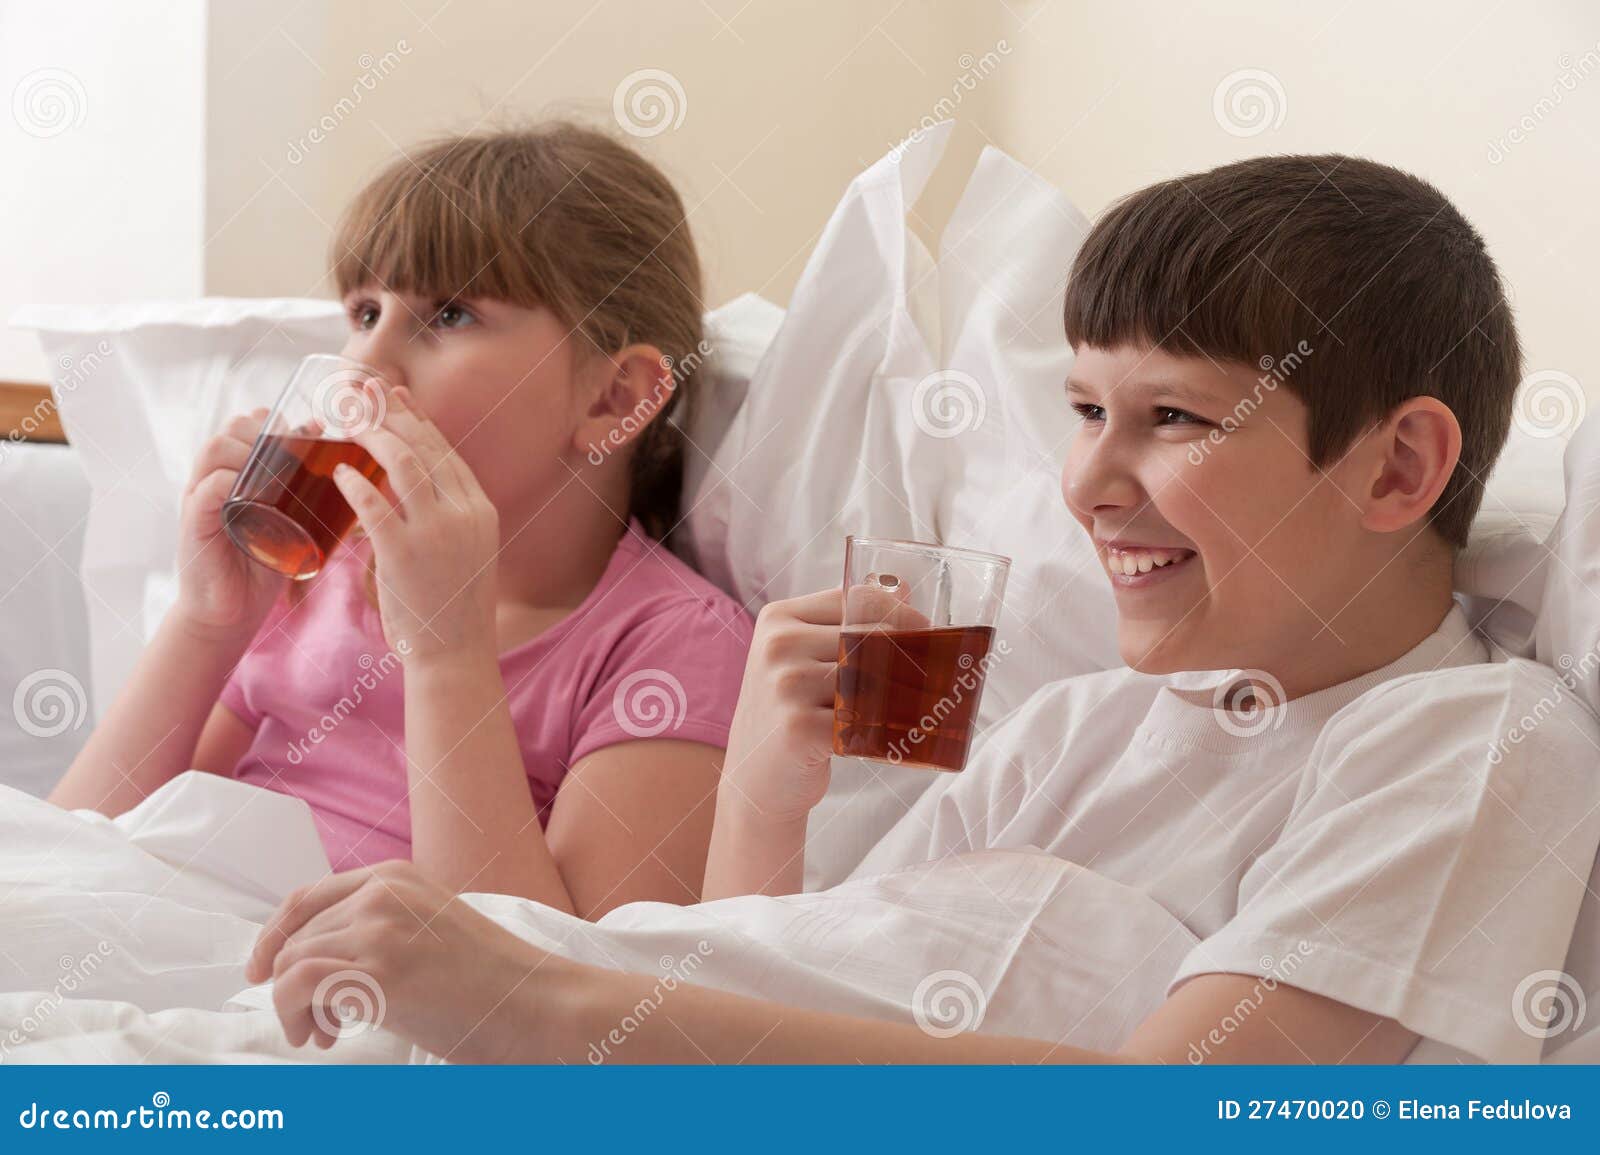 Пьет сестру друга. Брат чай. Сестра принесла брату чай в постель. Брат и сестра пьют чай. Дети пьют чай в кровати фото.